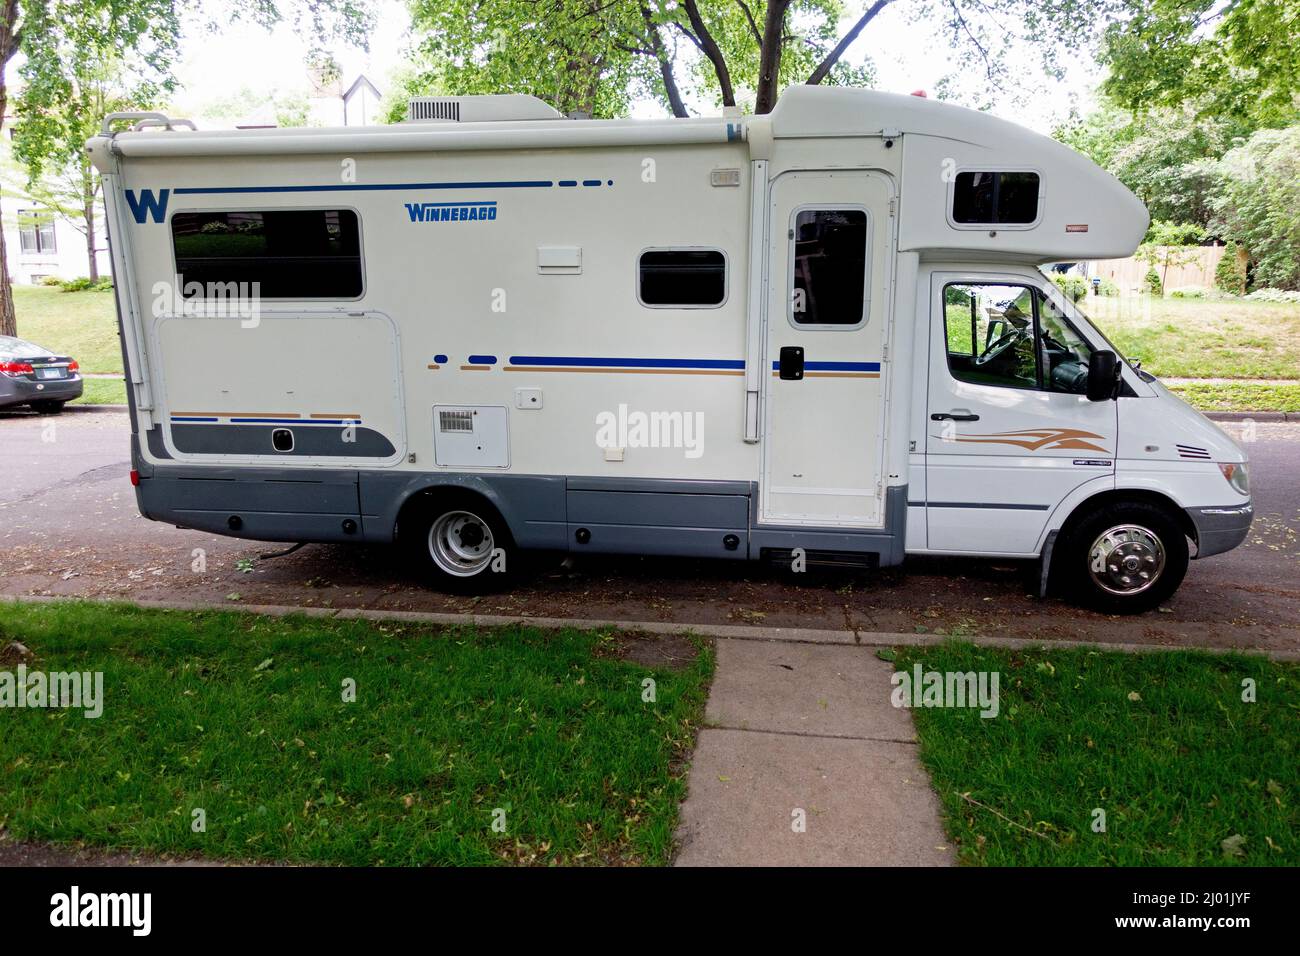 Vista lateral de un Trailer de Viaje Winnebago estacionado en una calle de la ciudad frente a una casa residencial. St Paul Minnesota MN EE.UU Foto de stock